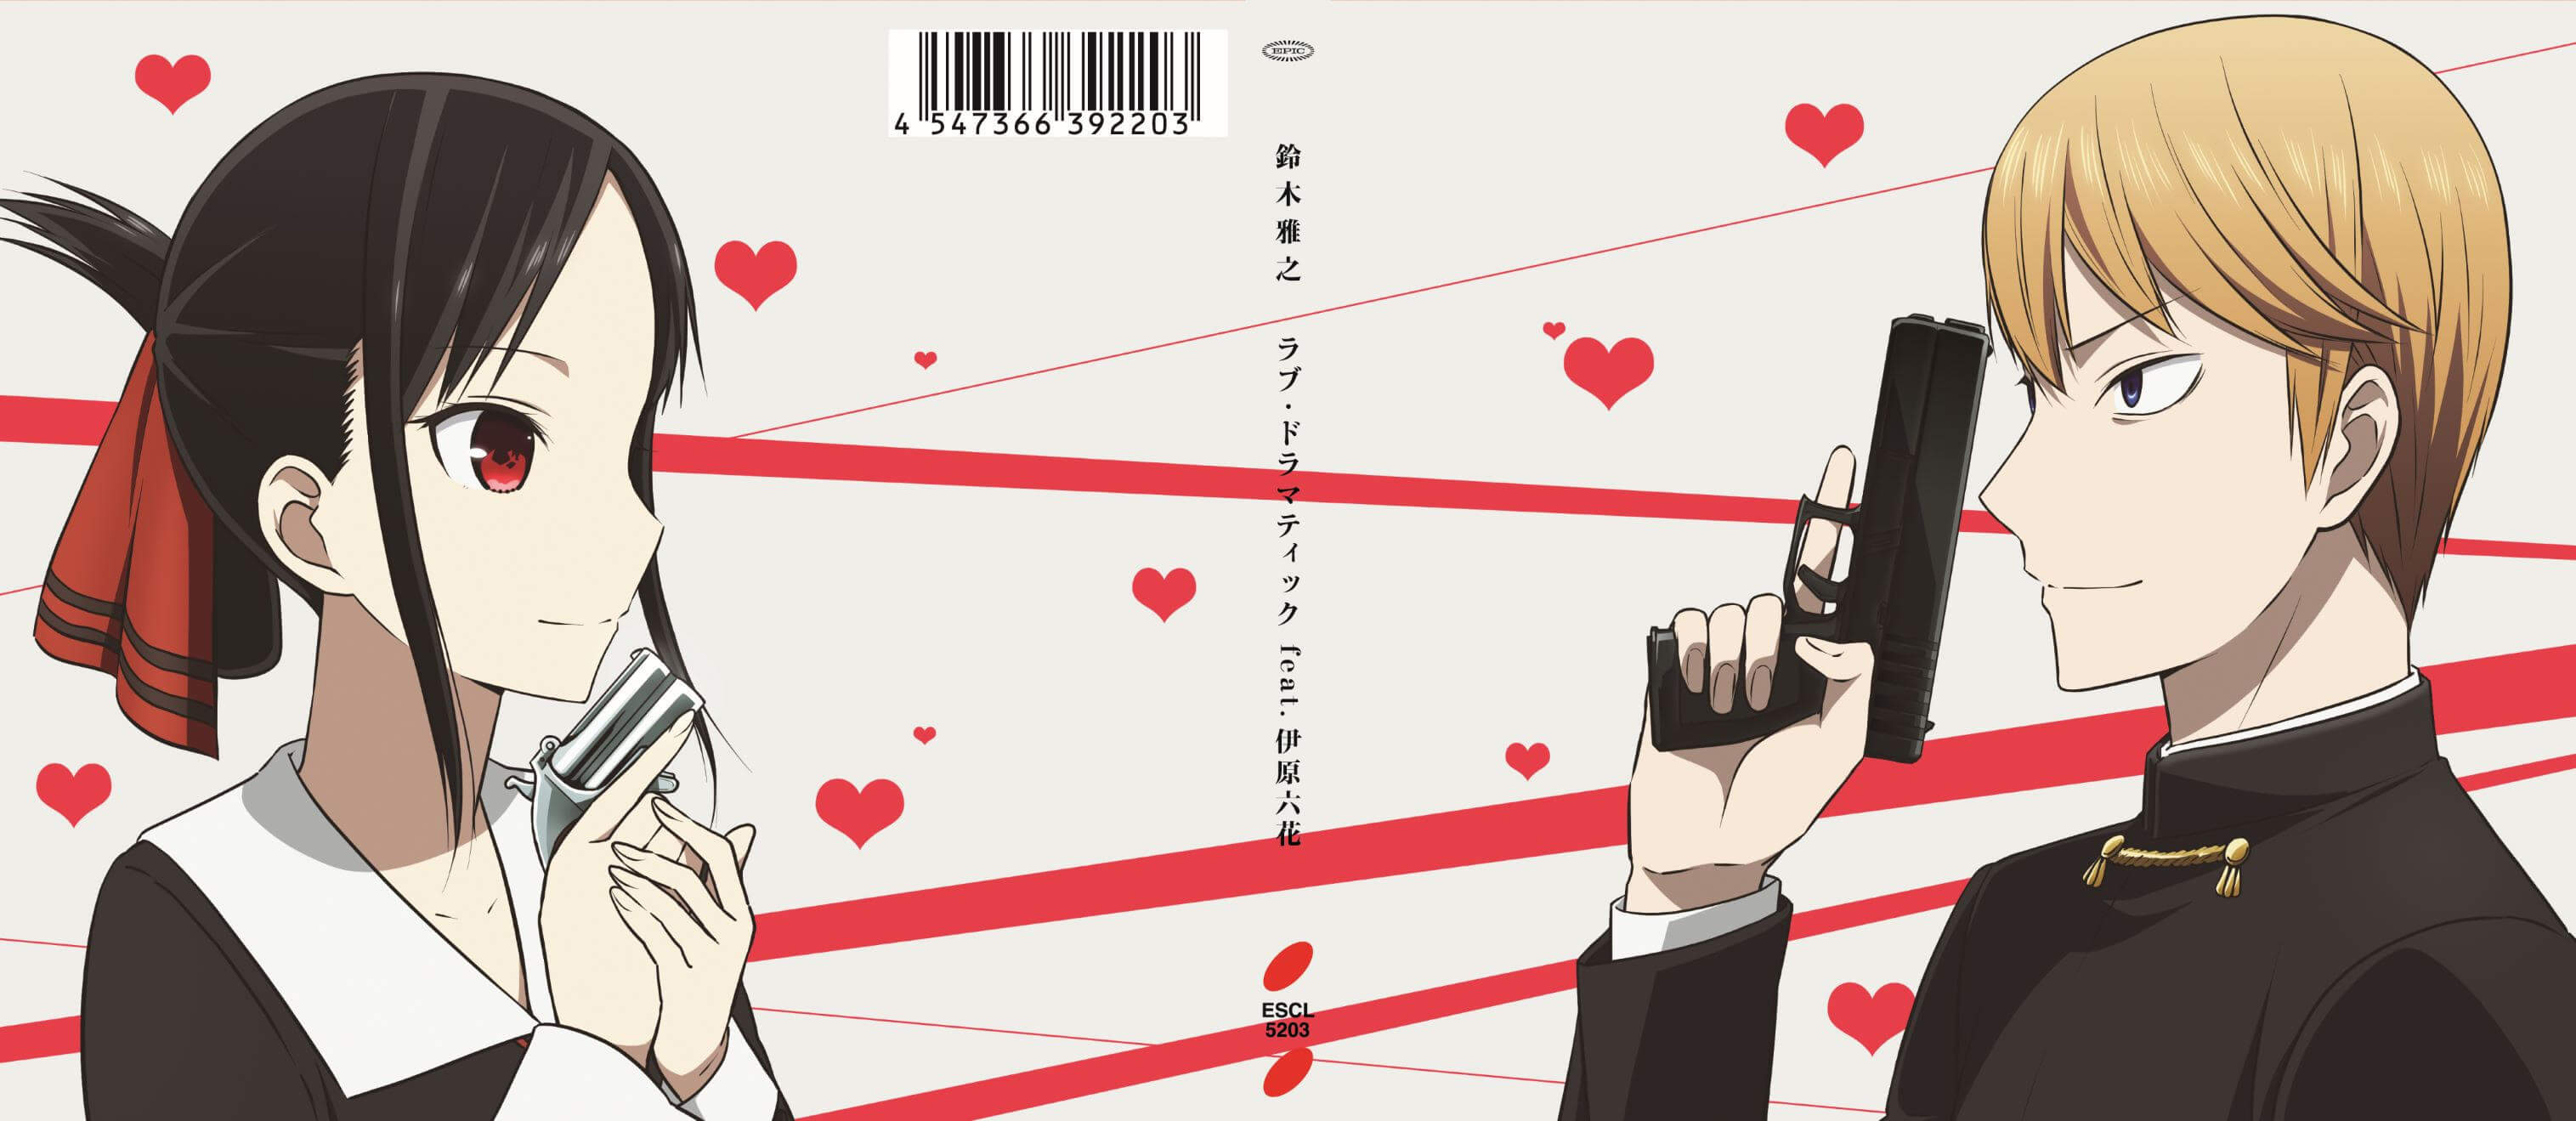 Kaguya-sama: Love is War - The First Kiss Never Ends OP『Love is Show』鈴木雅之  Masayuki Suzuki 